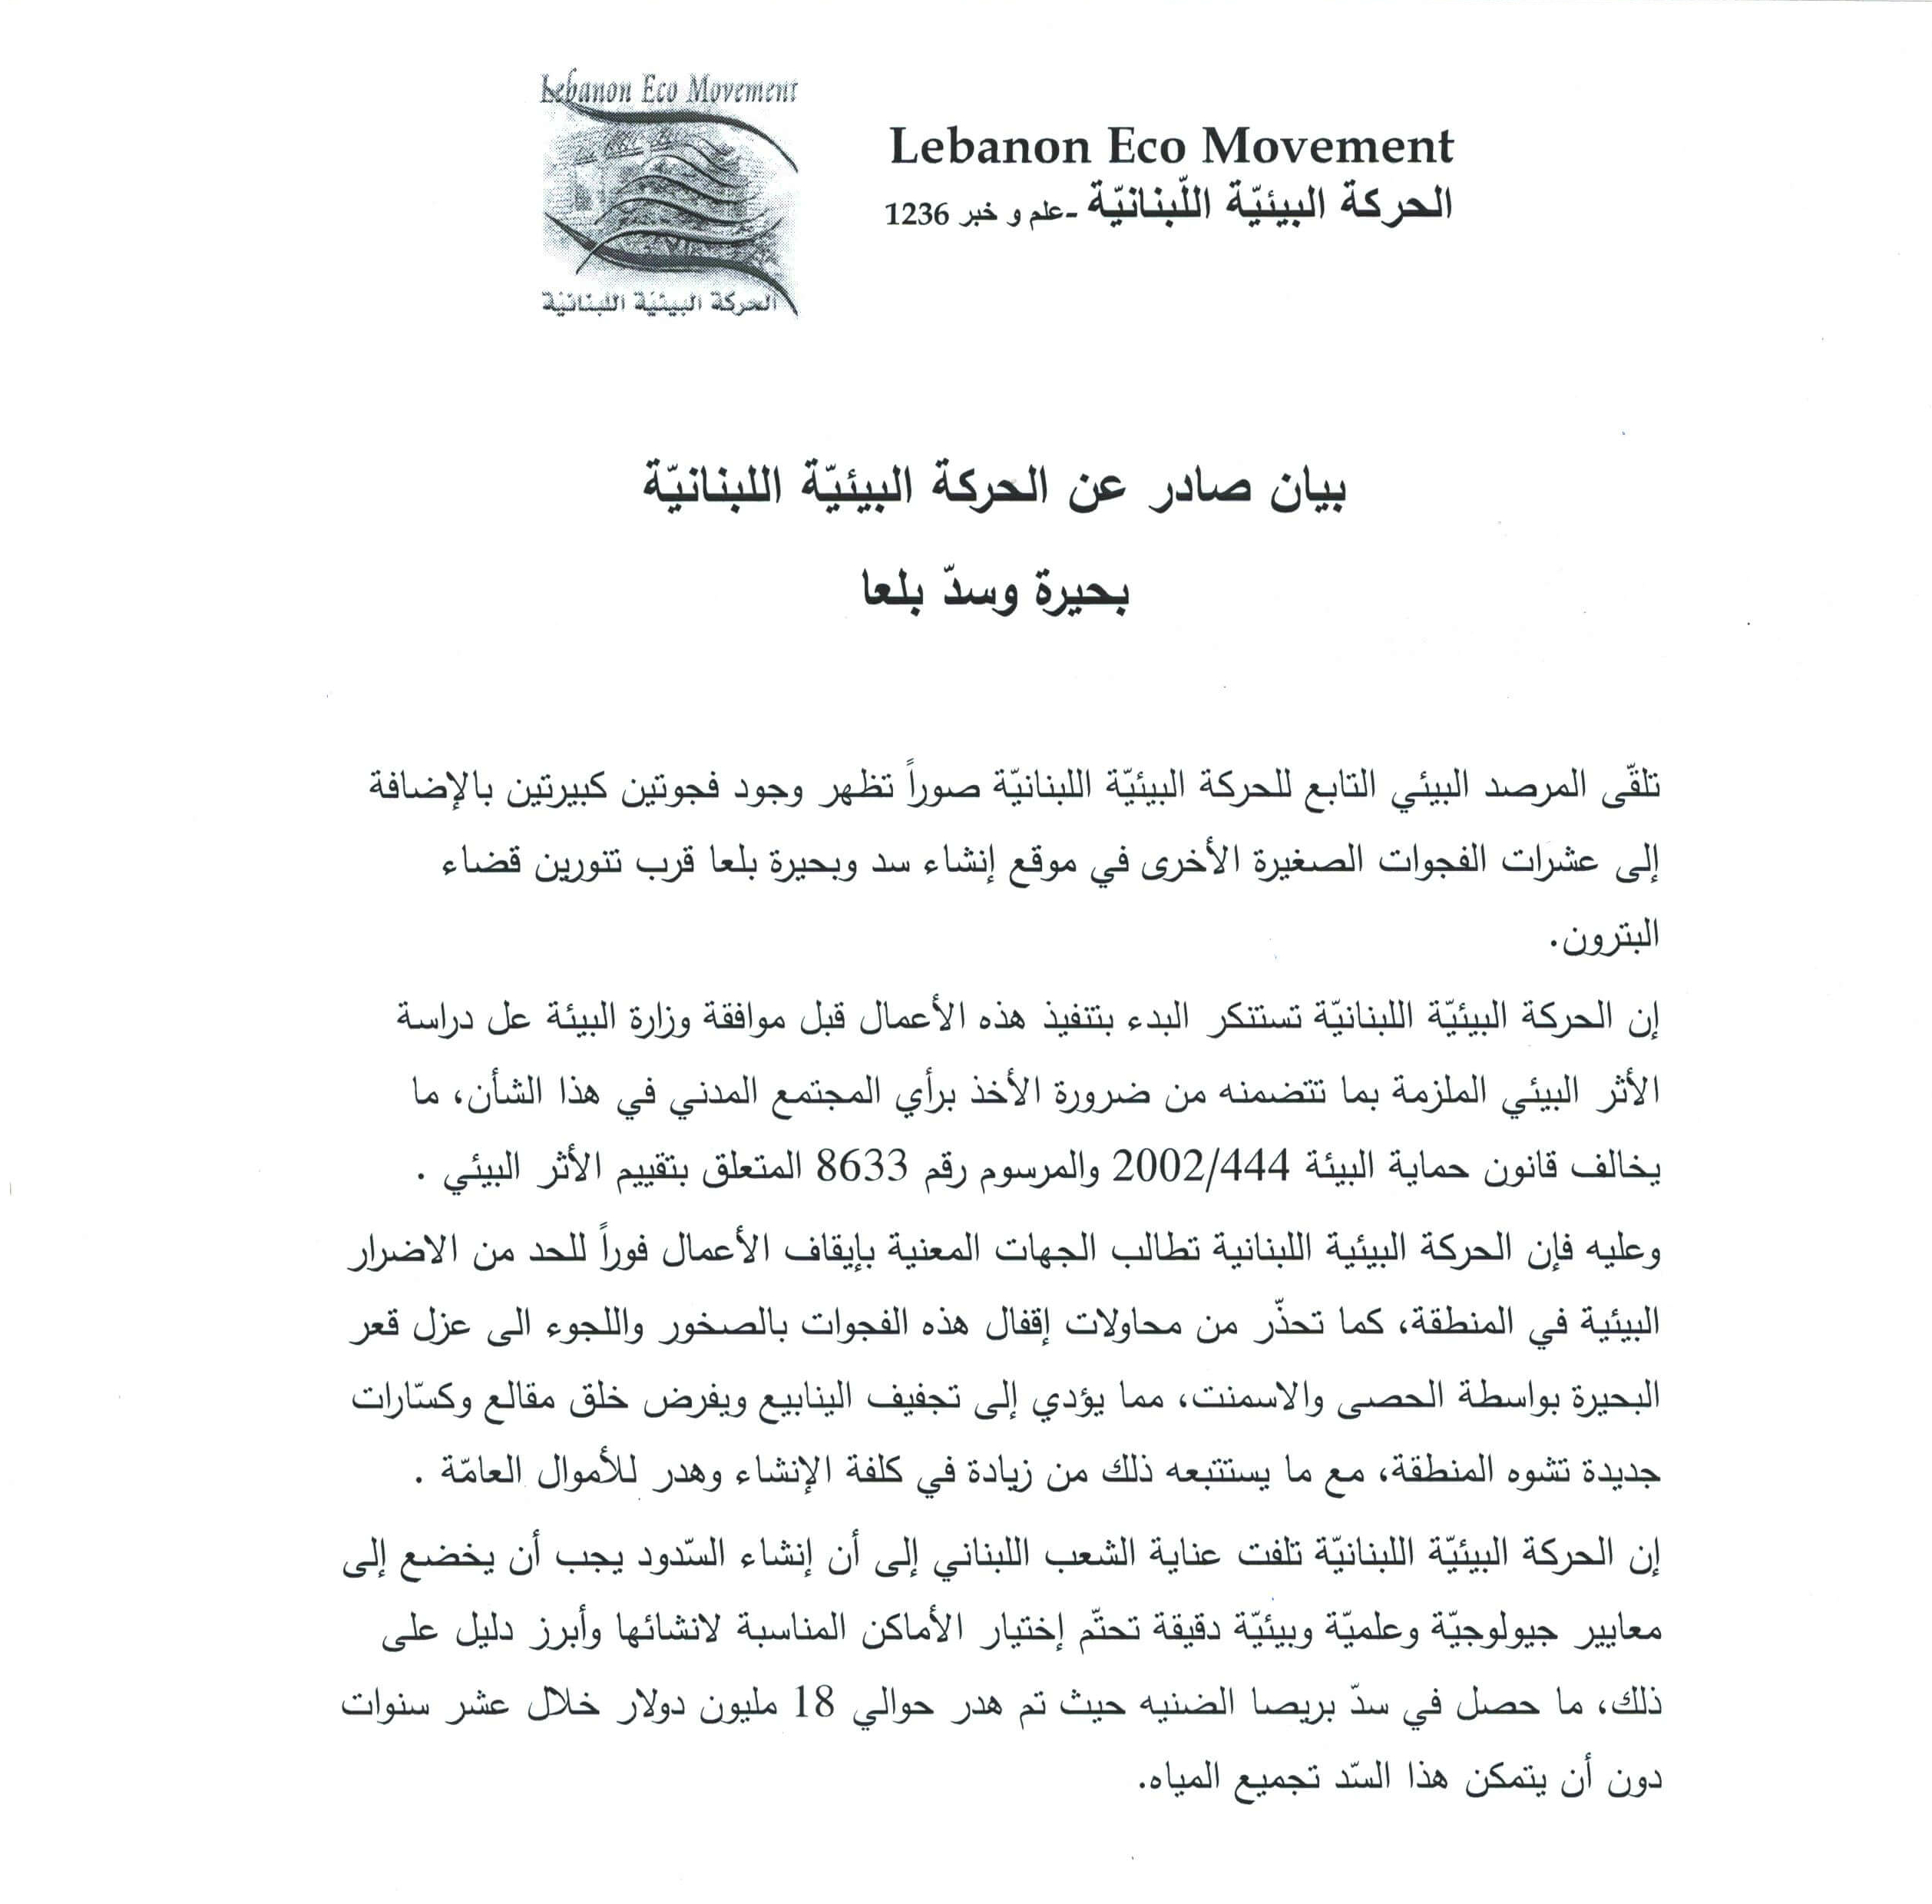 بيان صادر عن الحركة البيئية لأجل بحيرة وسدّ بلعا بتاريخ 23 تموز 2014